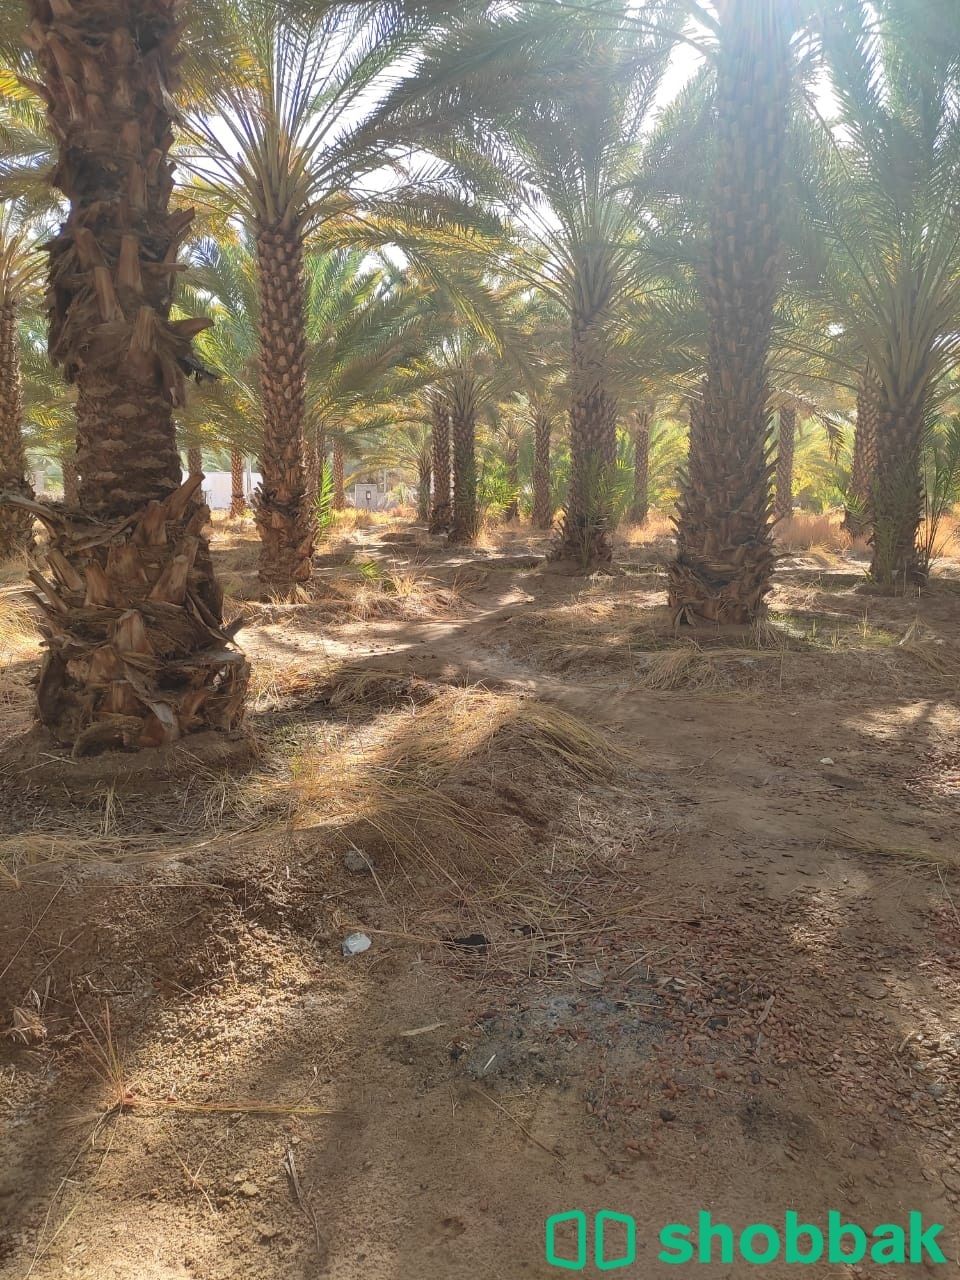 مزرعة نخيل بالعلا للايجار واستثمار النخل Shobbak Saudi Arabia